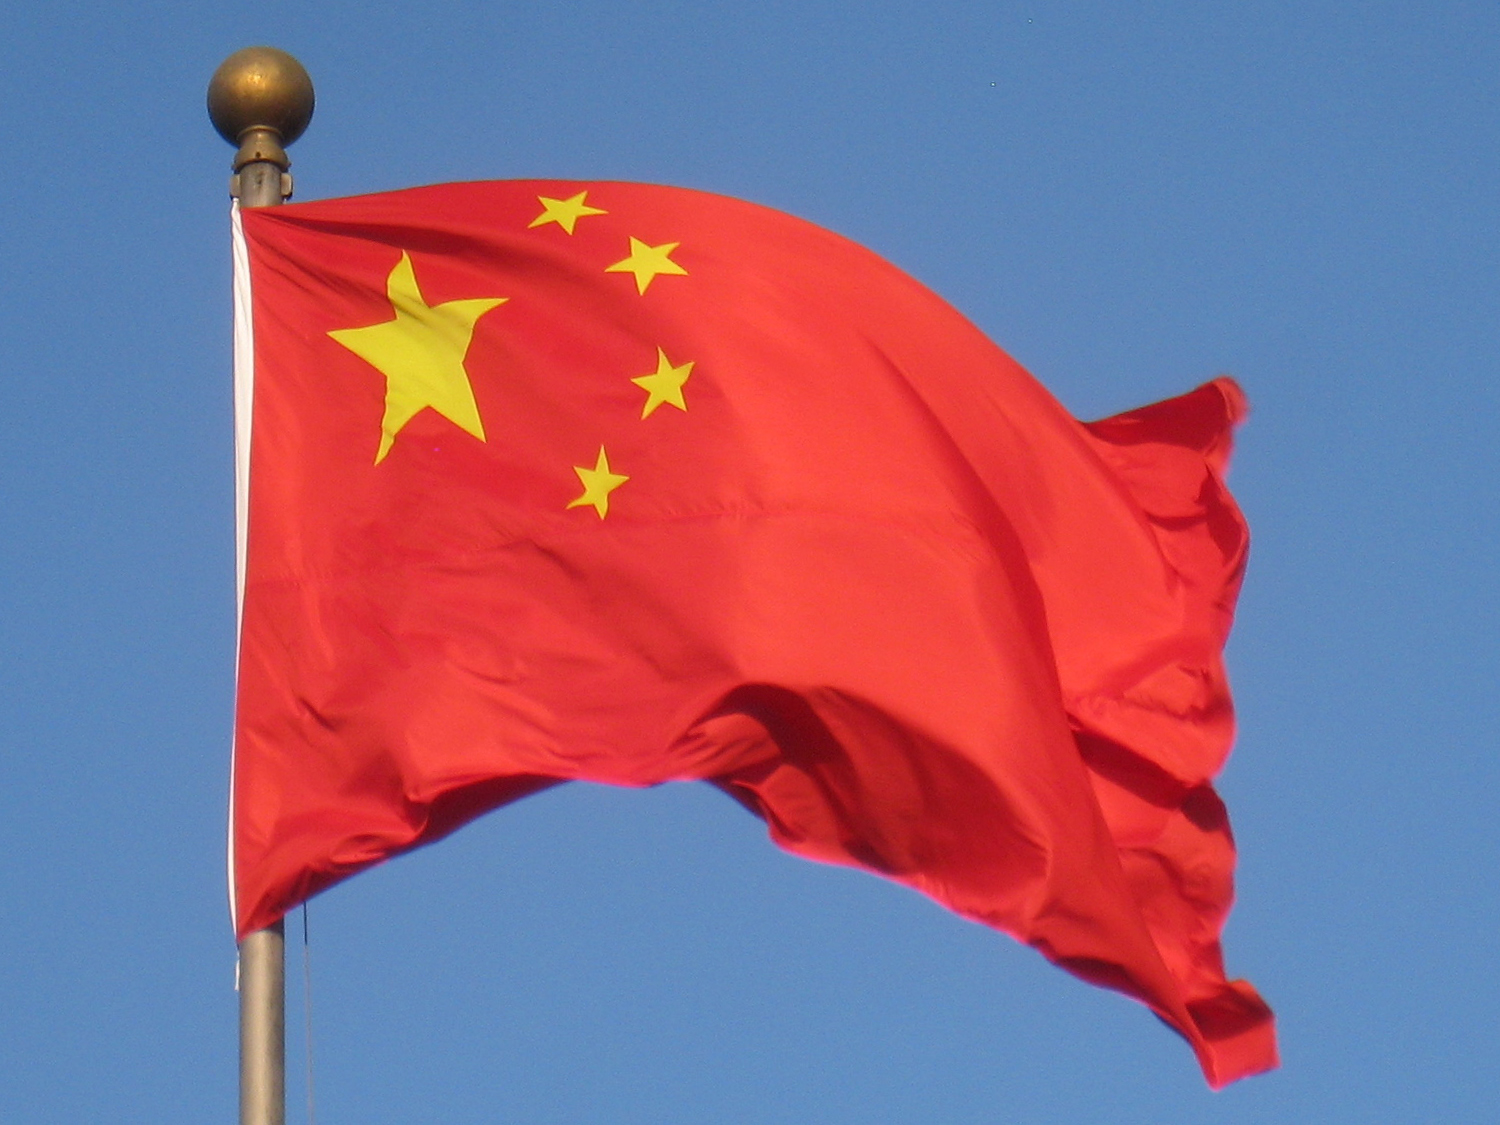 चीन को देना होगा पाई-पाई का हिसाब, अब सात देश मिलकर खोलेंगे CHINA का अकाउंट